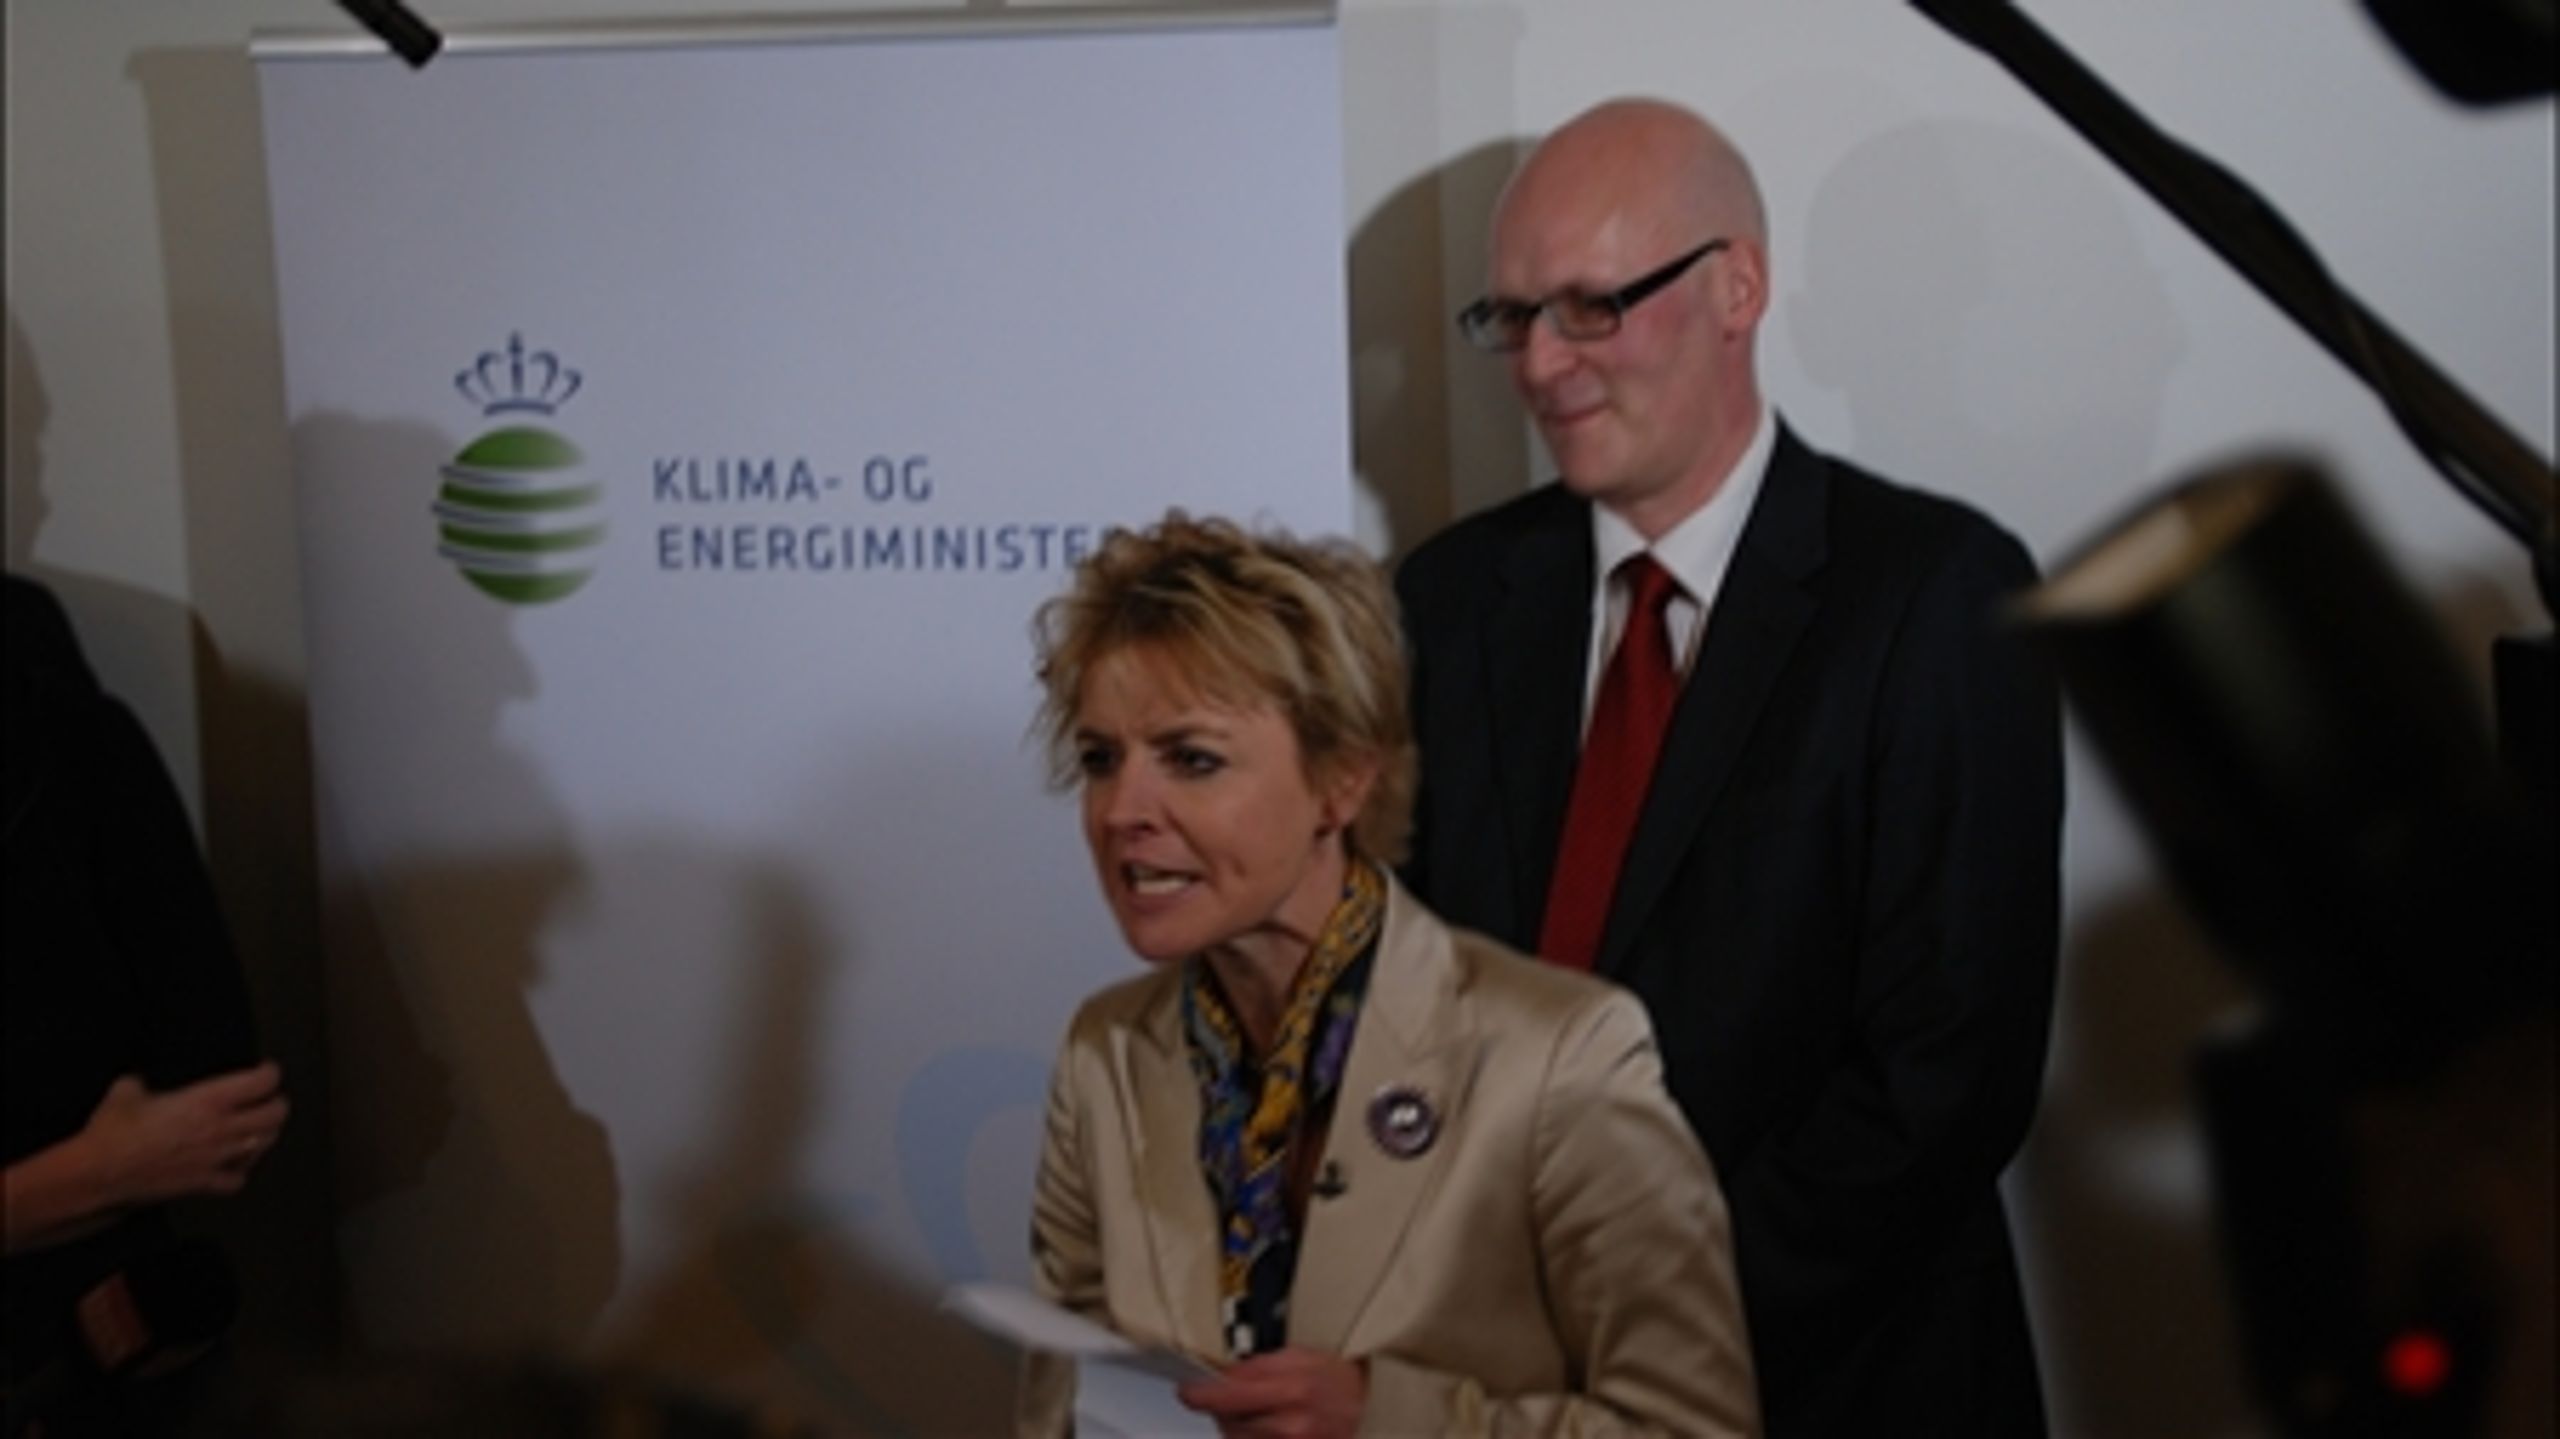 Lykke Friis overtog i g&#229;r Klima- og Energiministeriet fra Connie Hedegaard. 